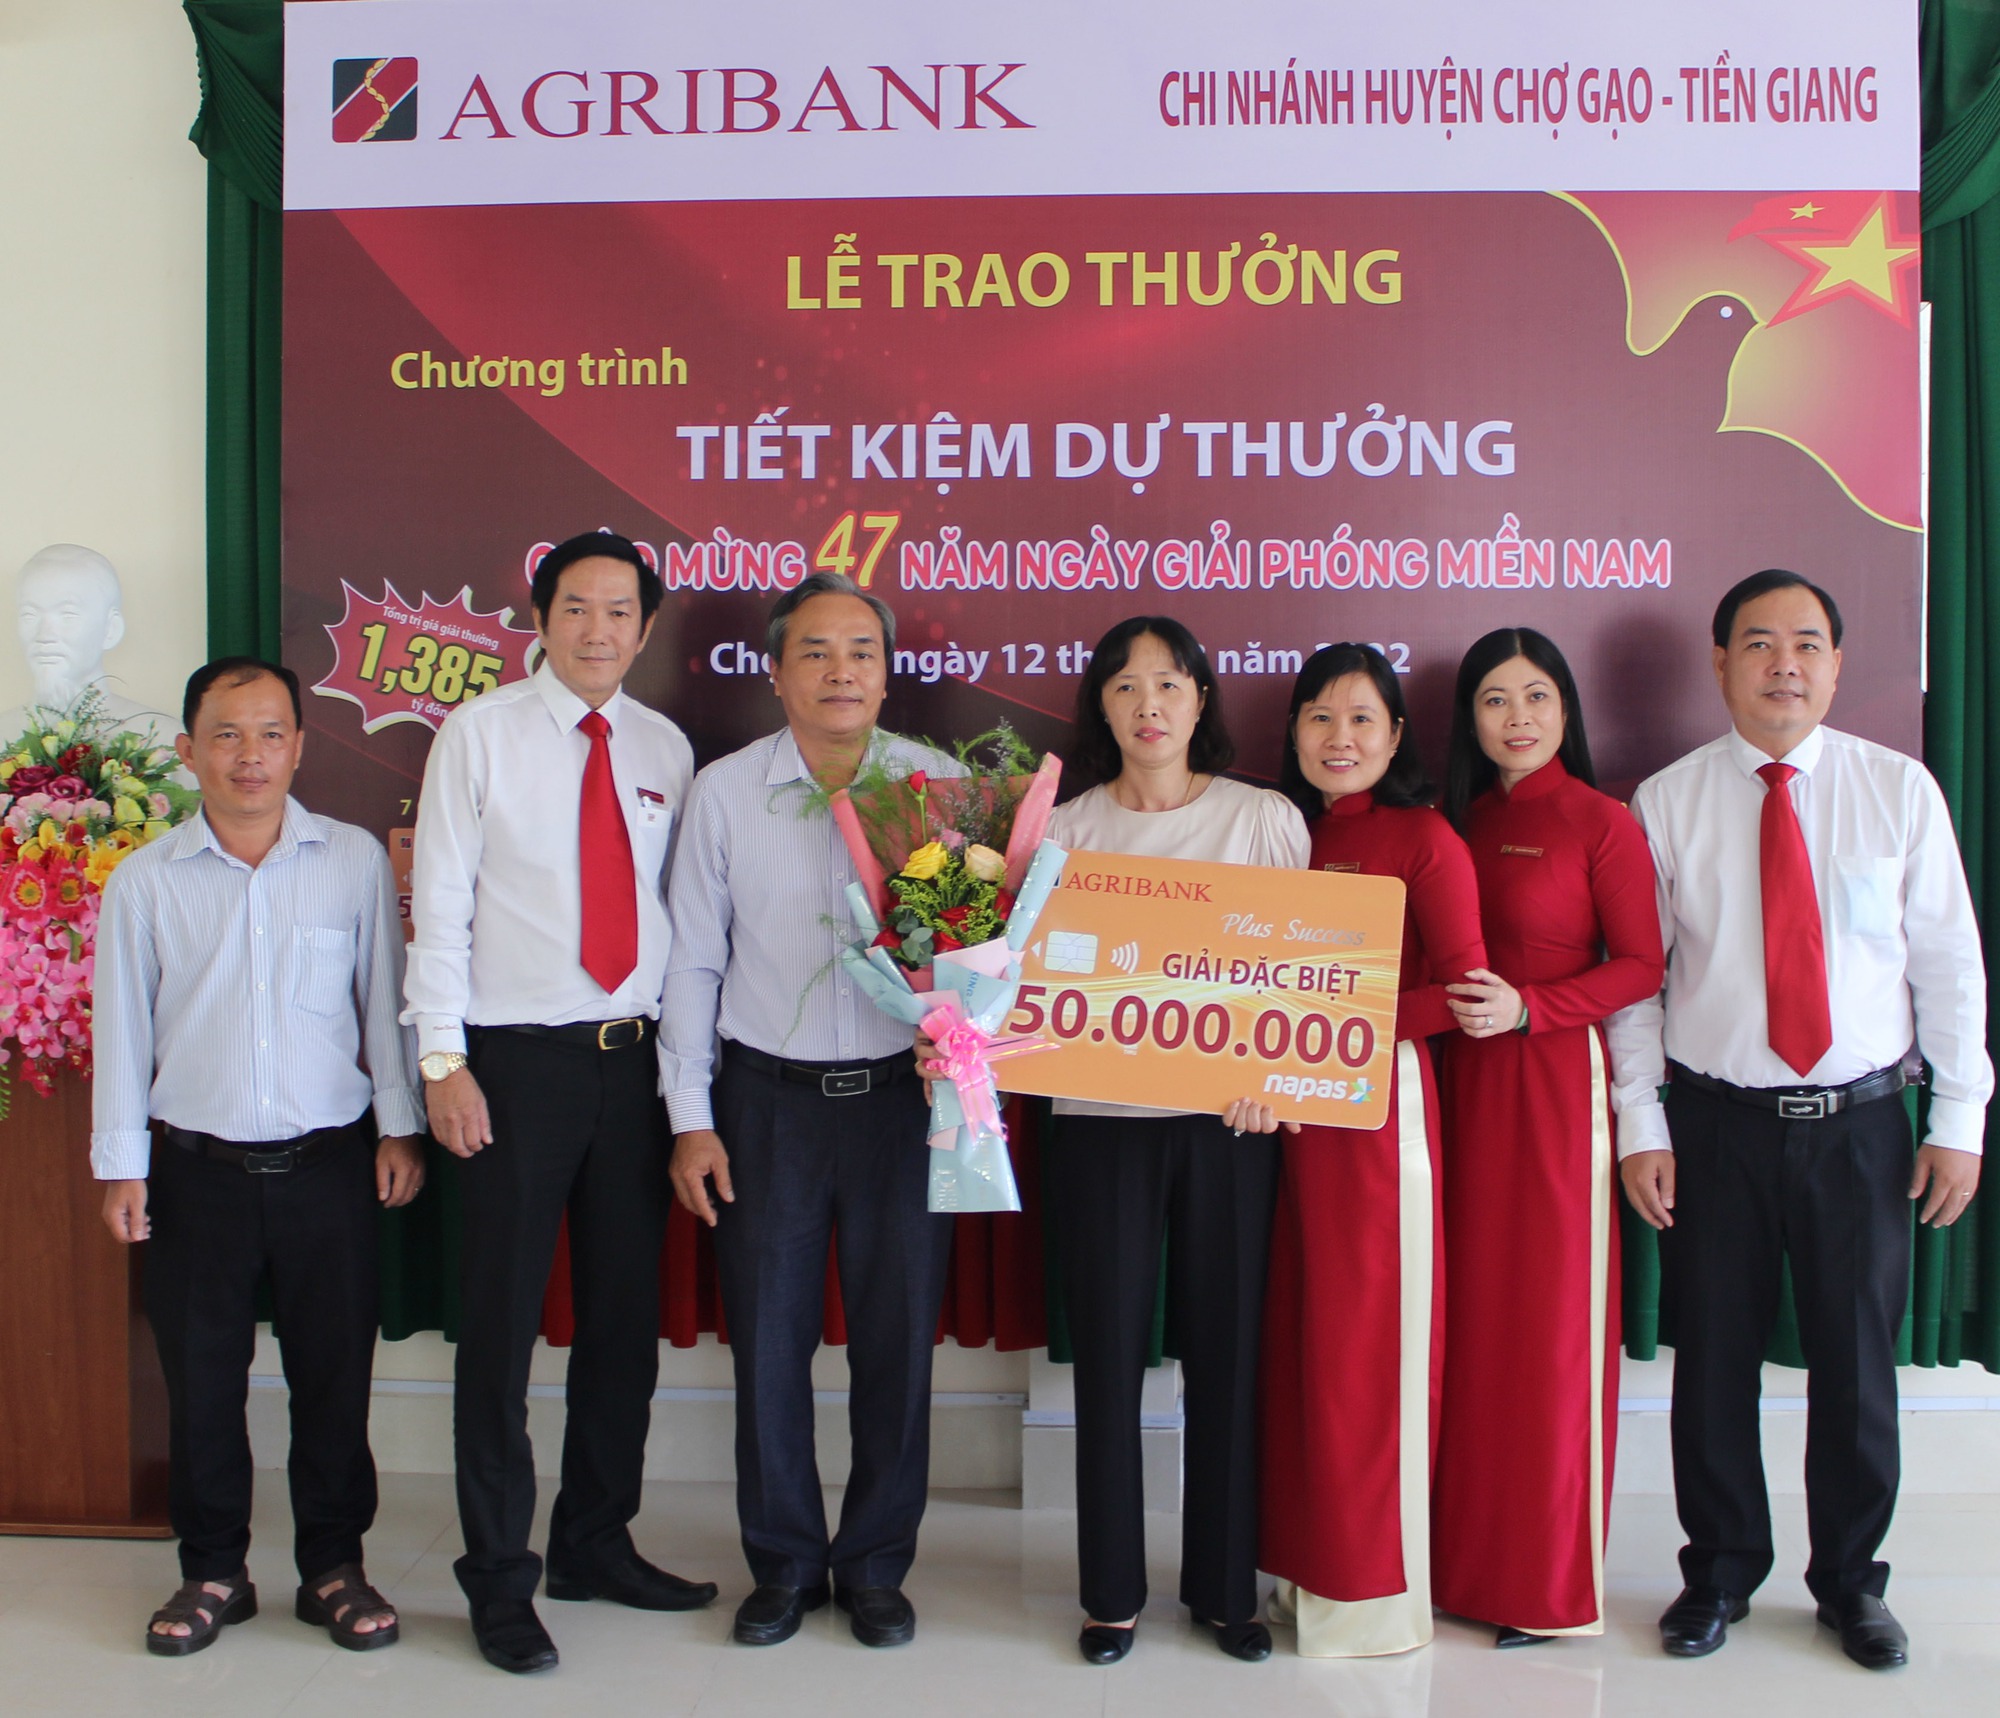 Agribank Tiền Giang trao thưởng gần 1,4 tỷ đồng cho 997 khách hàng may mắn - Ảnh 2.